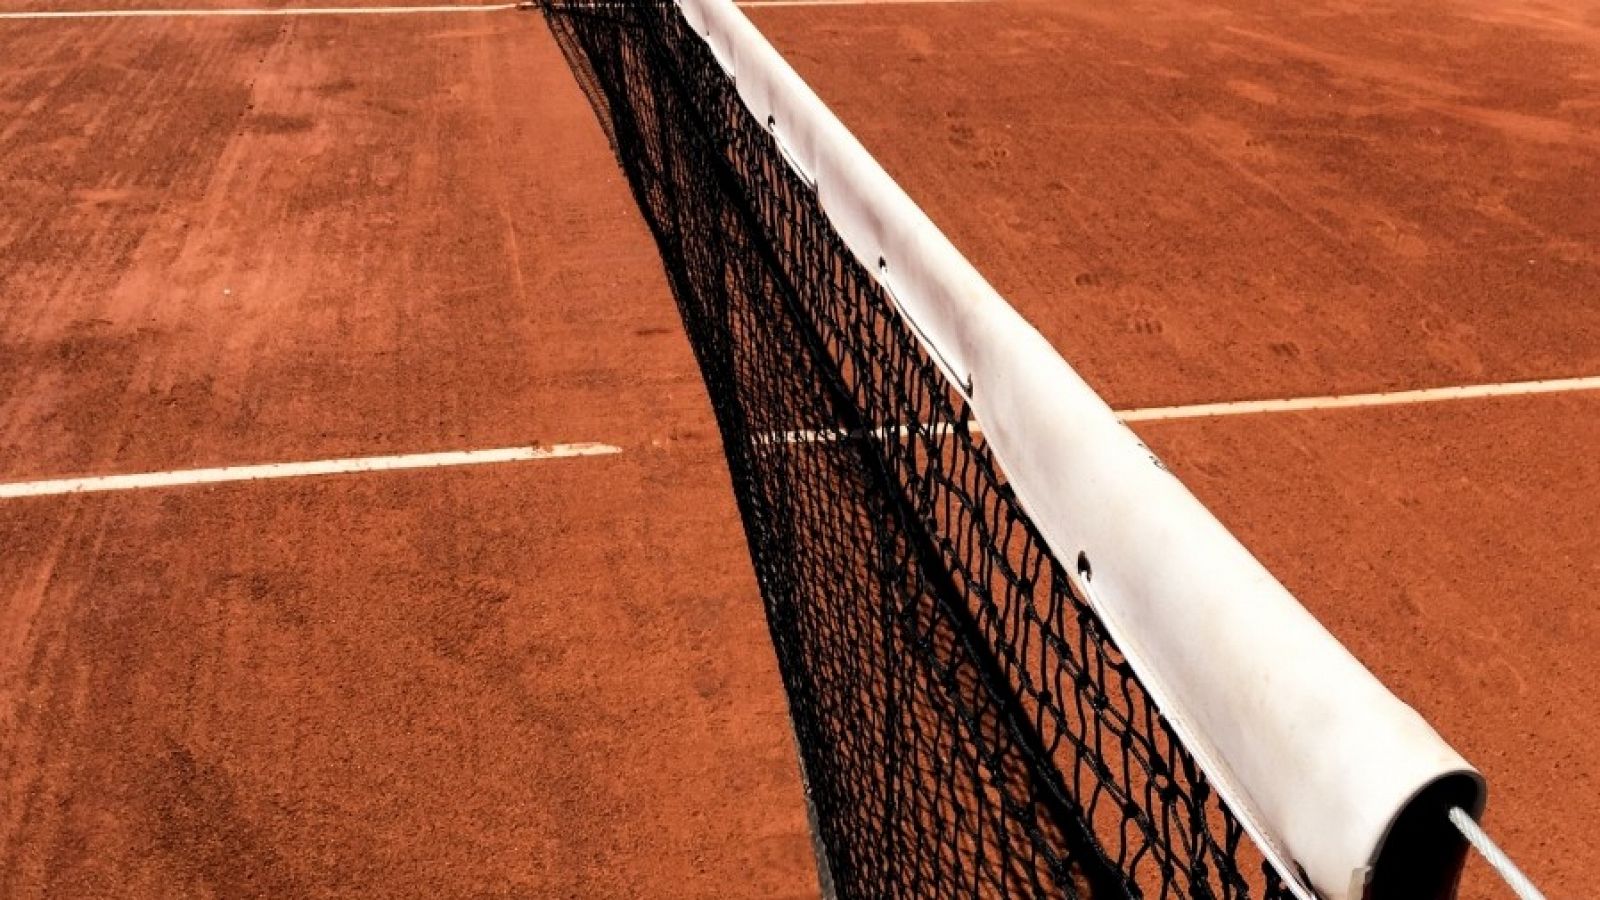 Detalle de una pista de tenis.